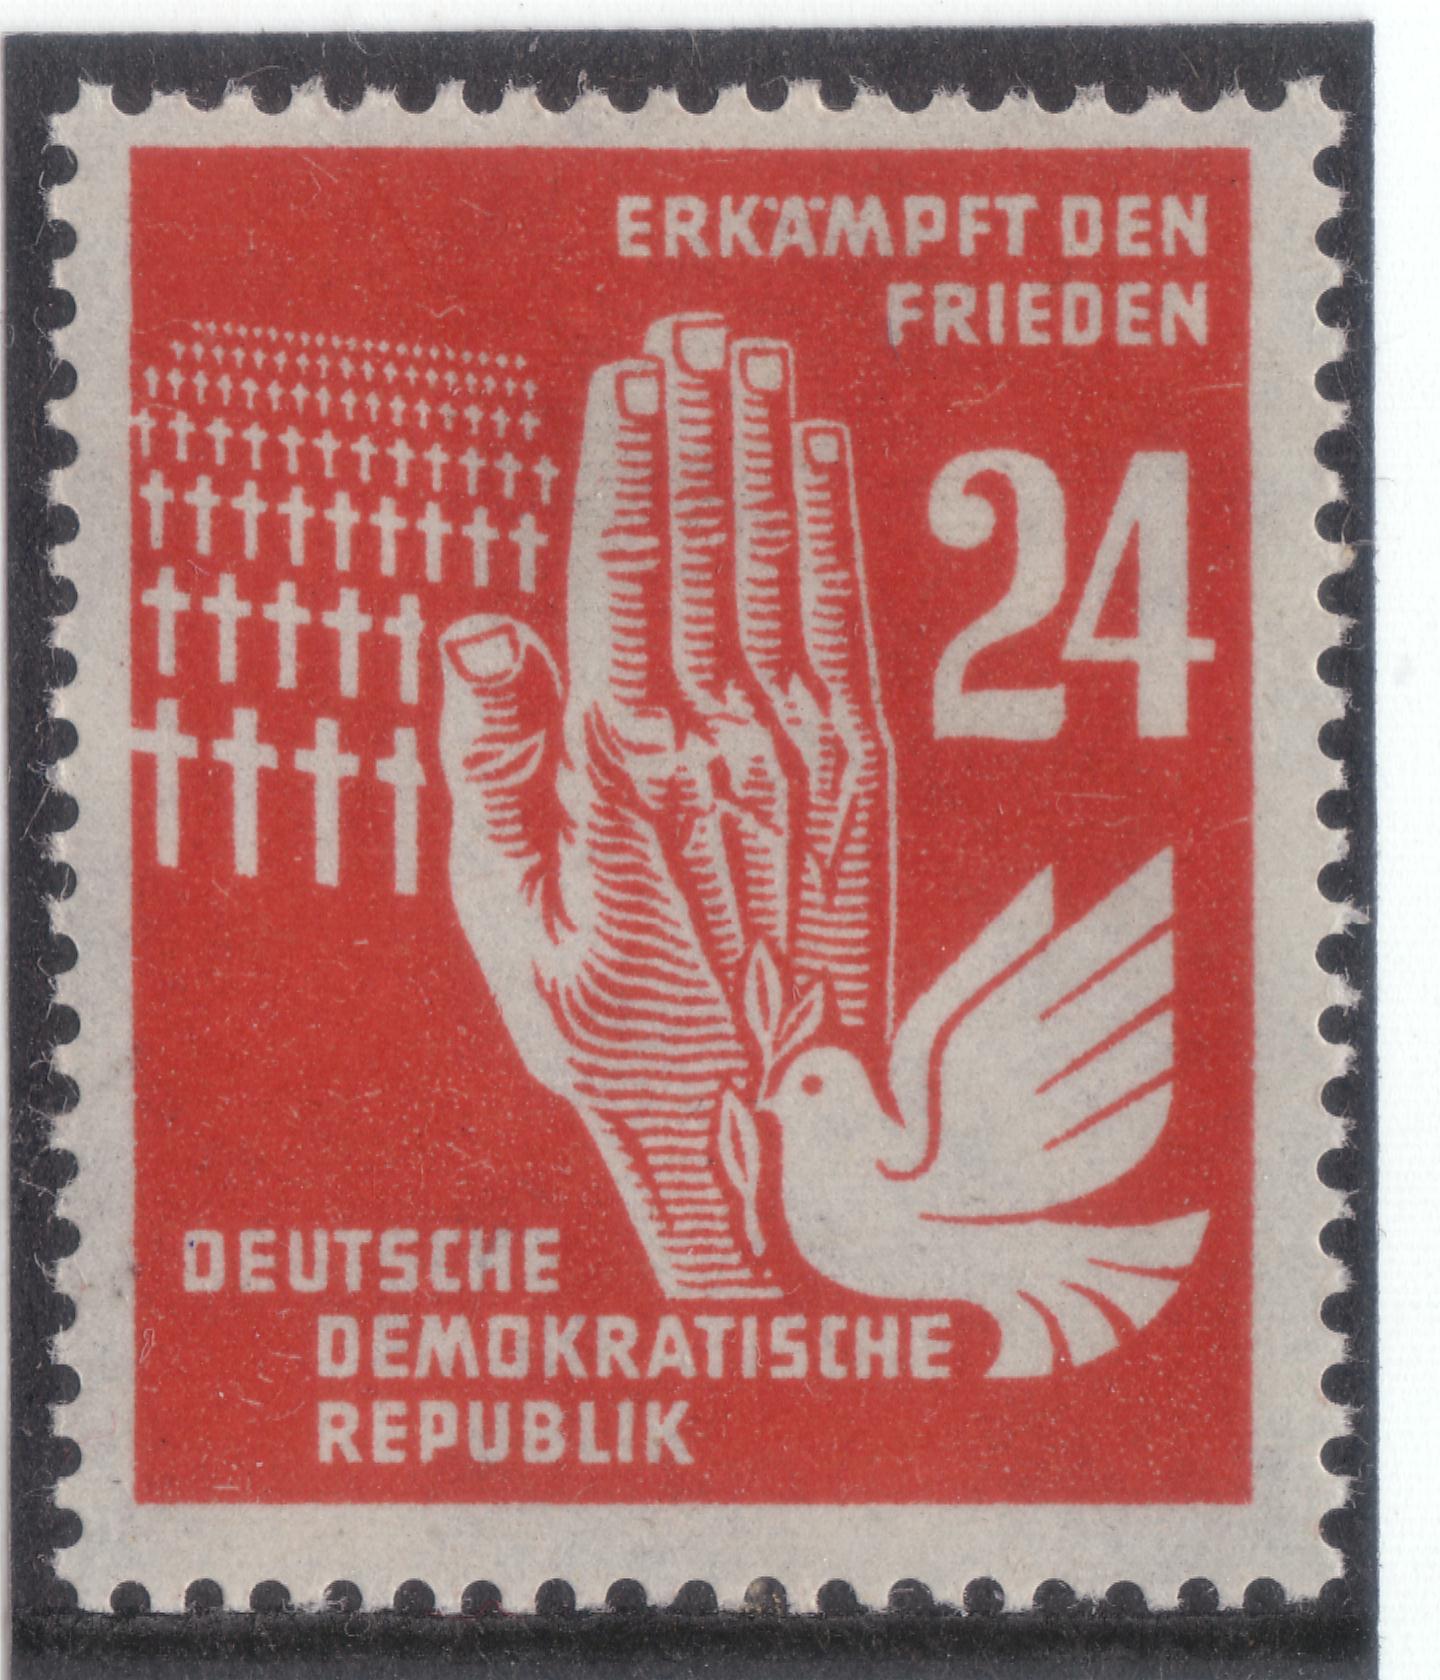 Kampf für Frieden 1950 - Friedenstaube und Hand vor einem Soldatenfriedhof